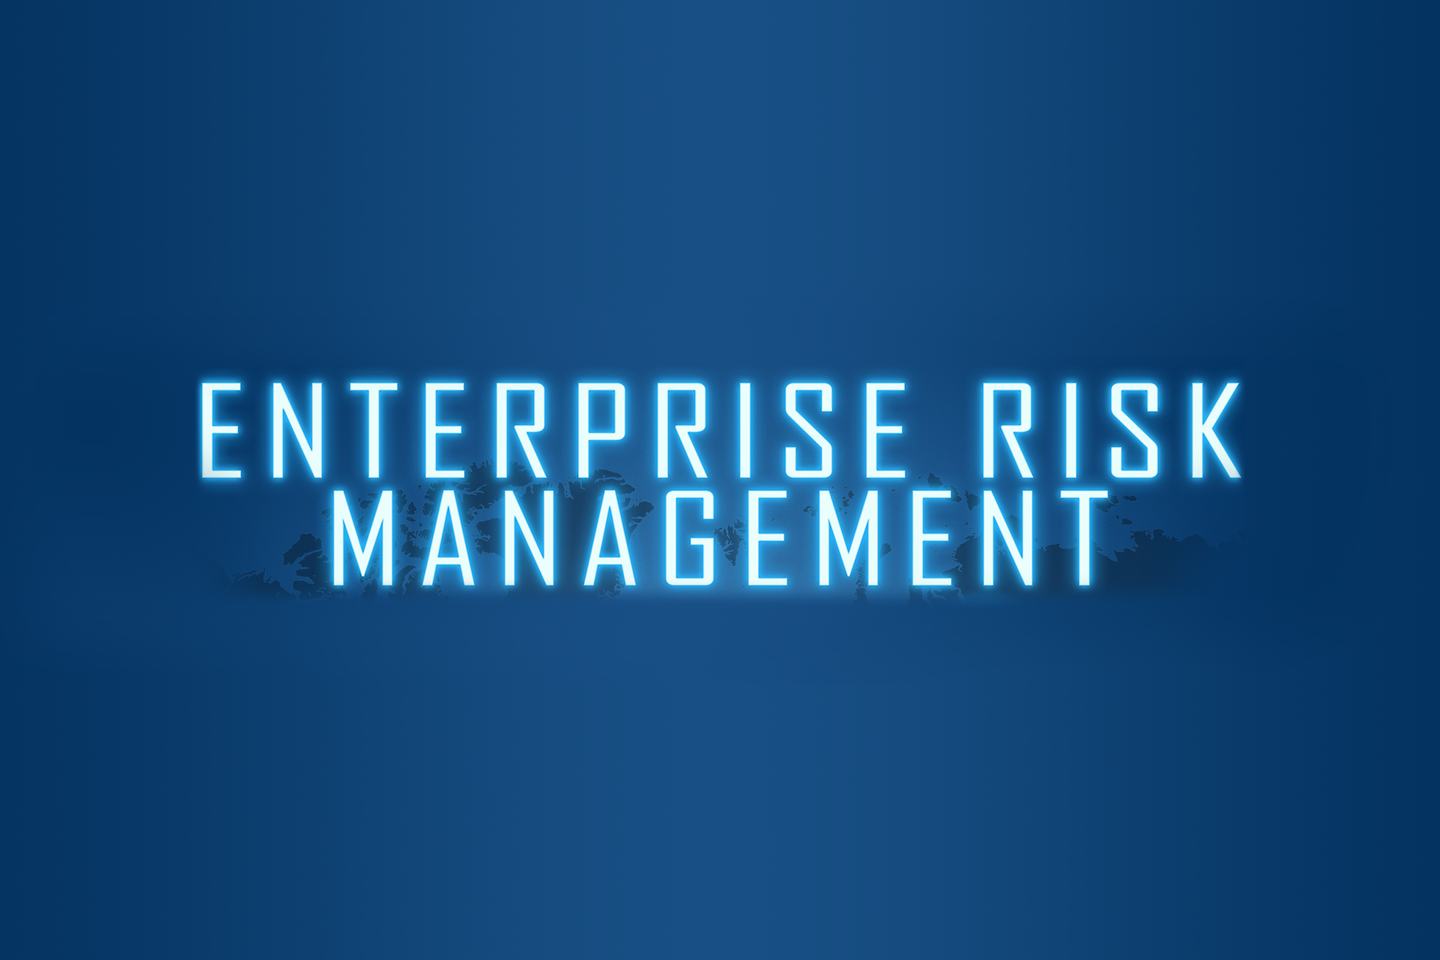 Der Schriftzug Enterprise Risk Management vor einem blauen Hintergrund mit einer Weltkarte.